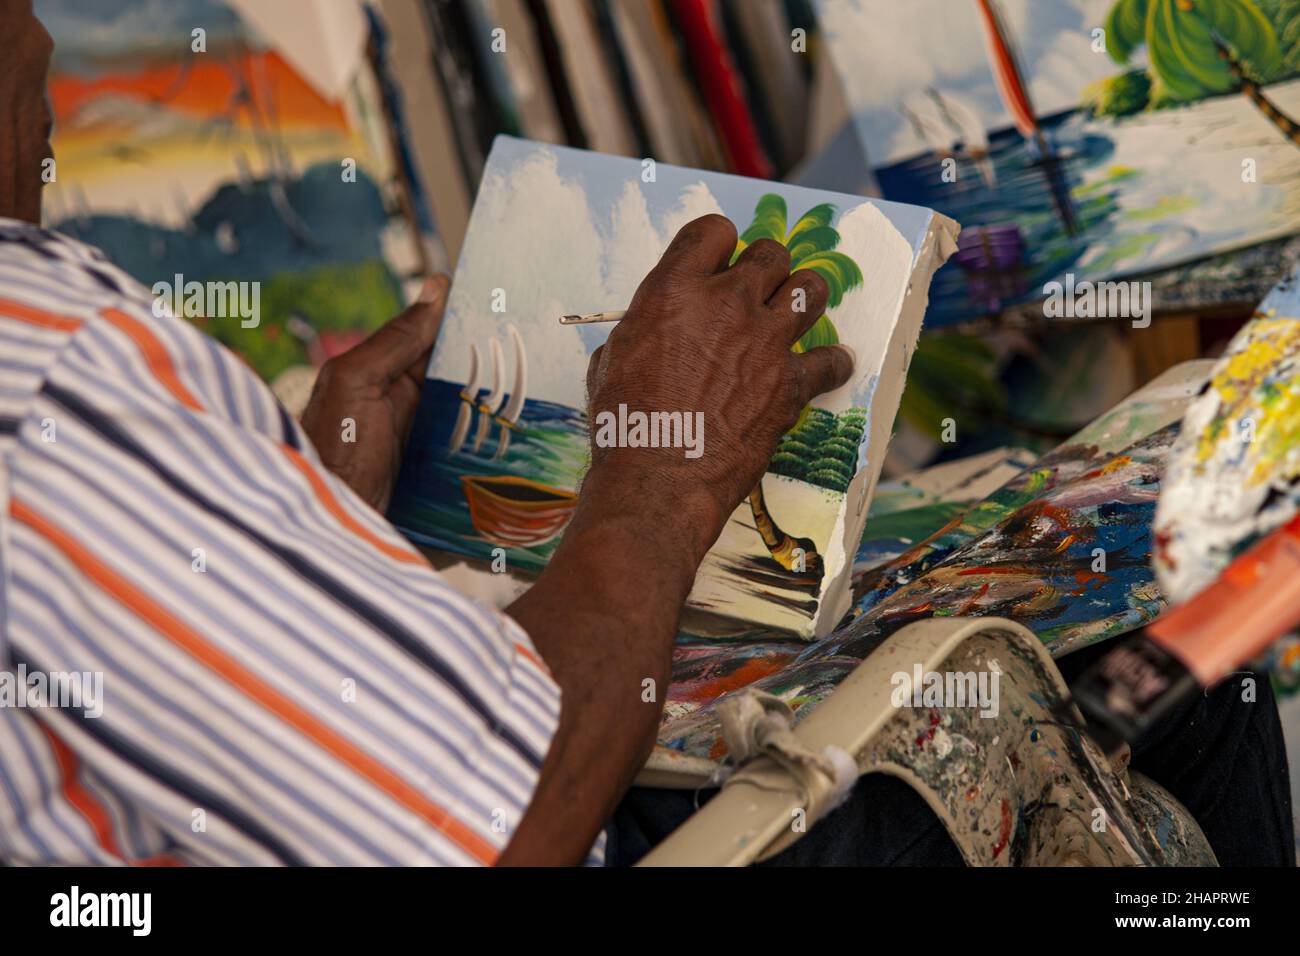 BAYAHIBE, REPÚBLICA DOMINICANA - 03 de enero de 2020: BAYAHIBE, REPÚBLICA DOMINICANA 4 DE ENERO de 2020: Pinturas de pintor dominicano Foto de stock